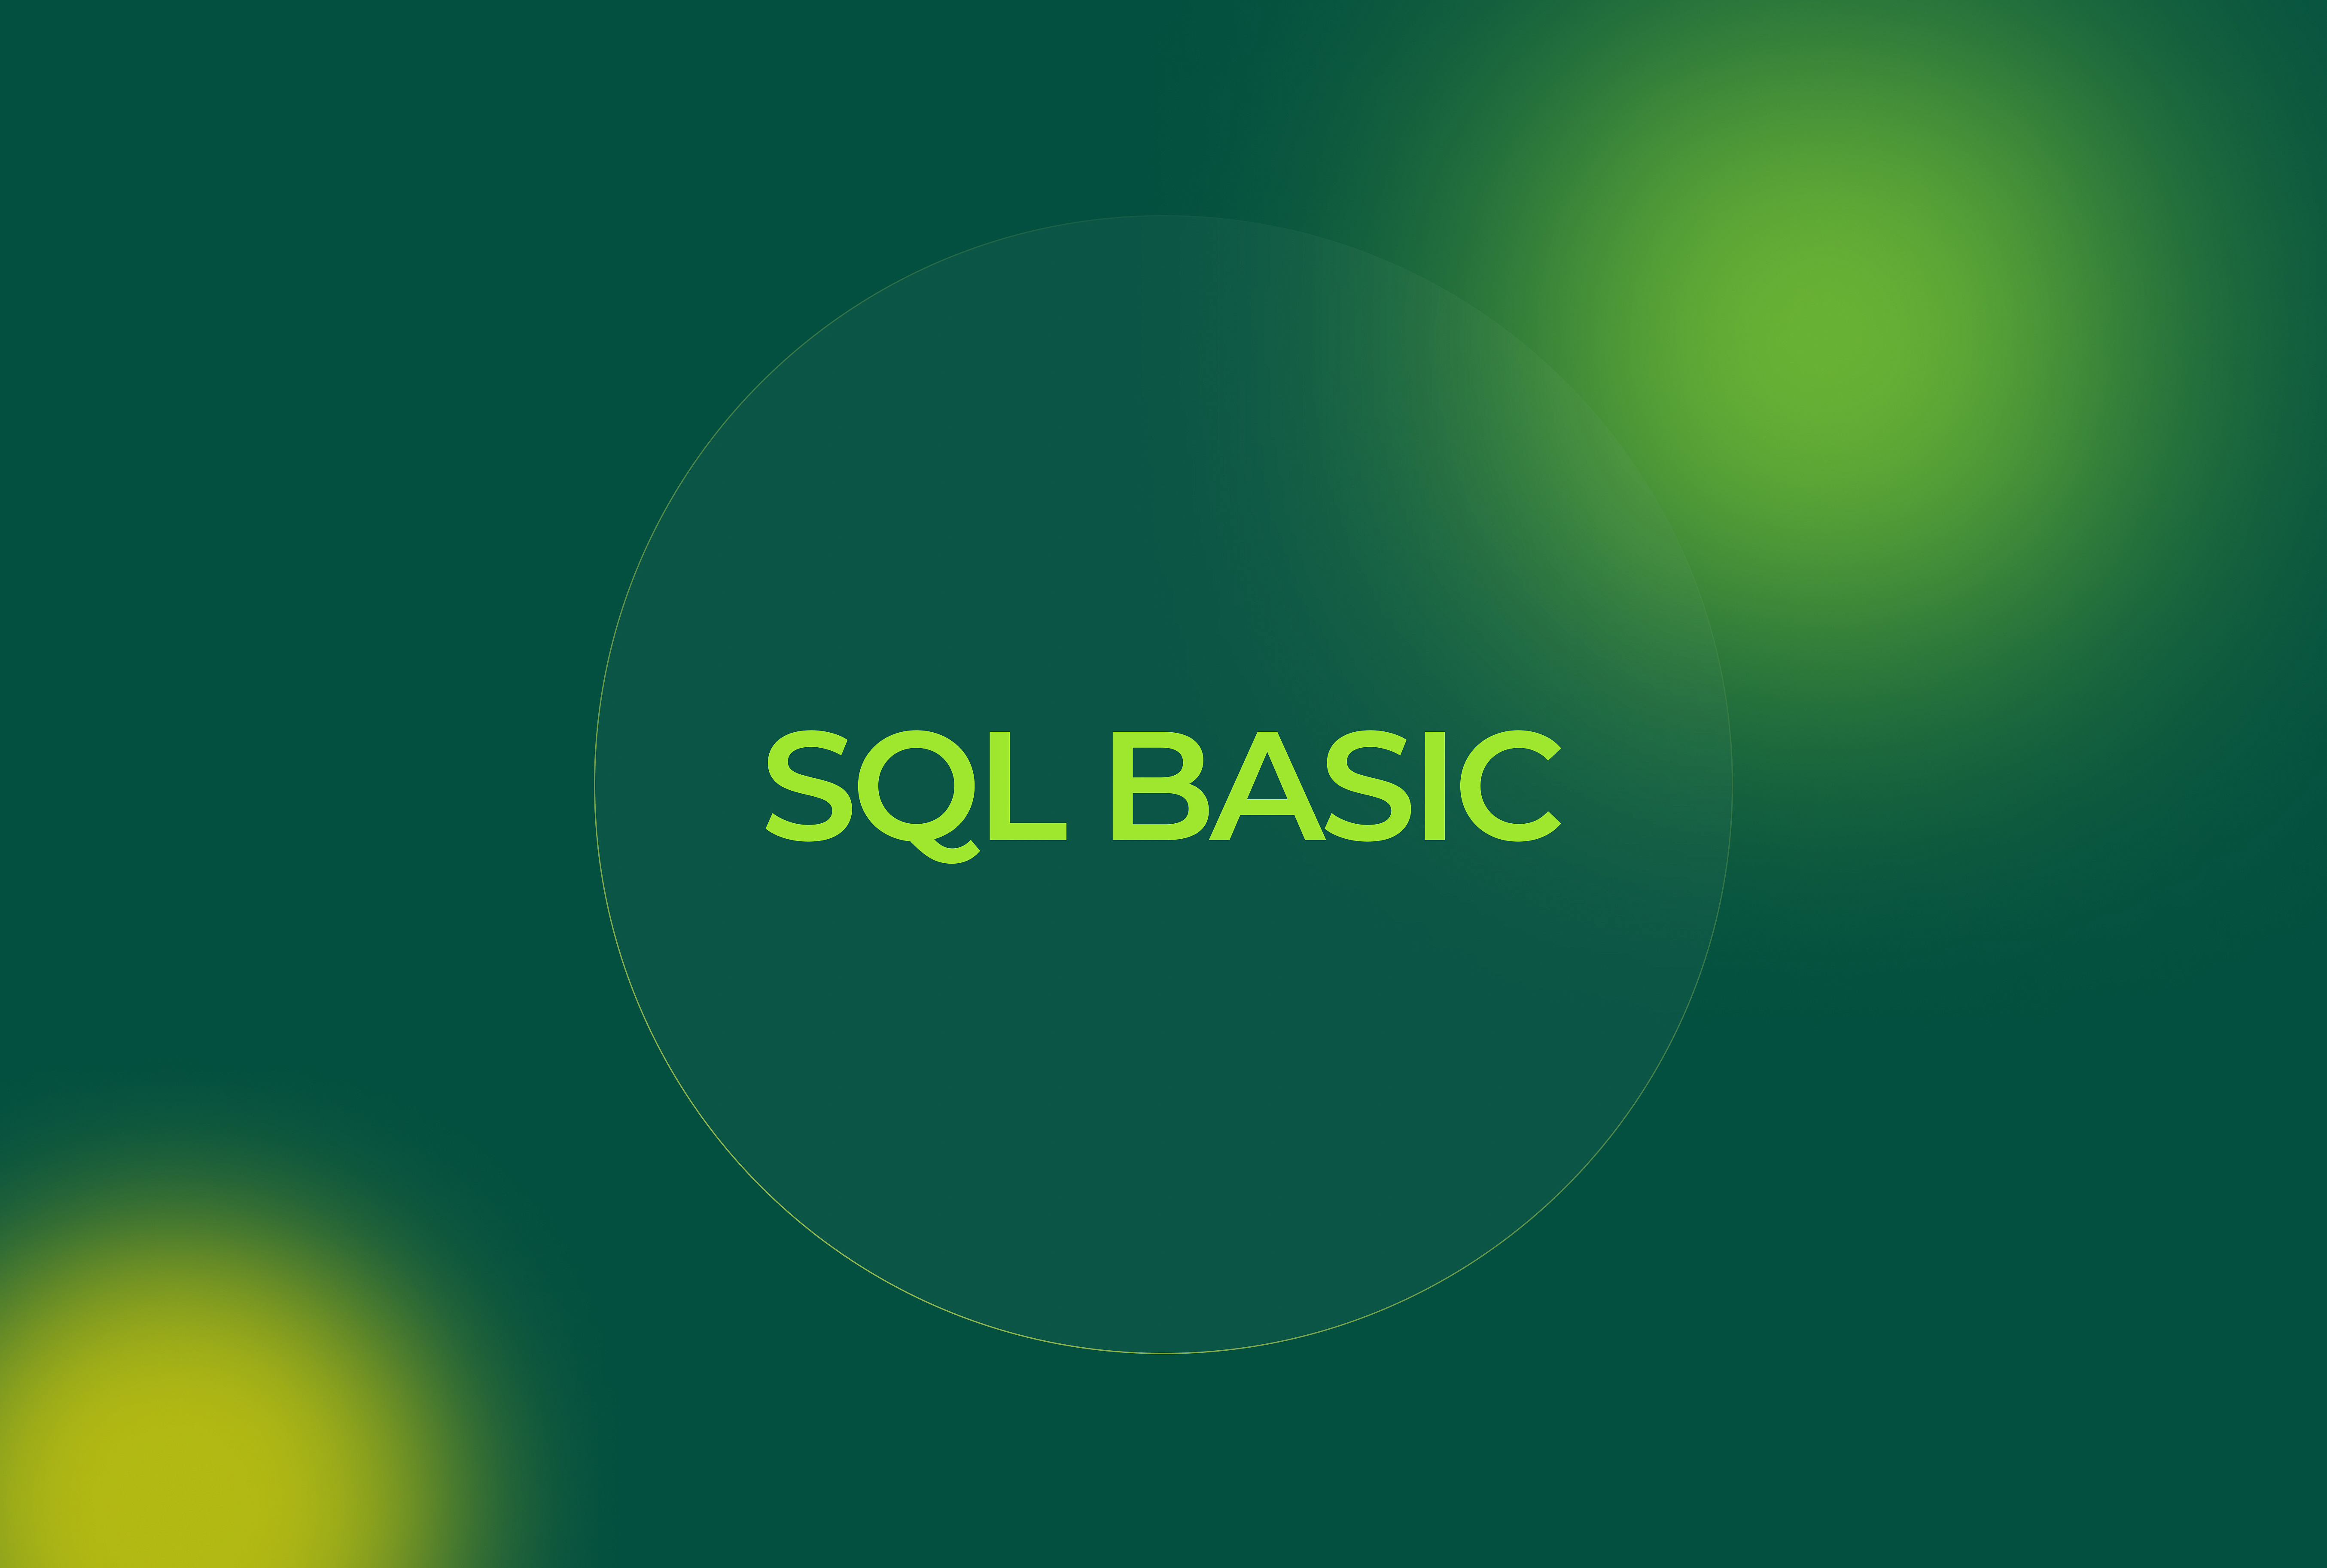 SQL basic